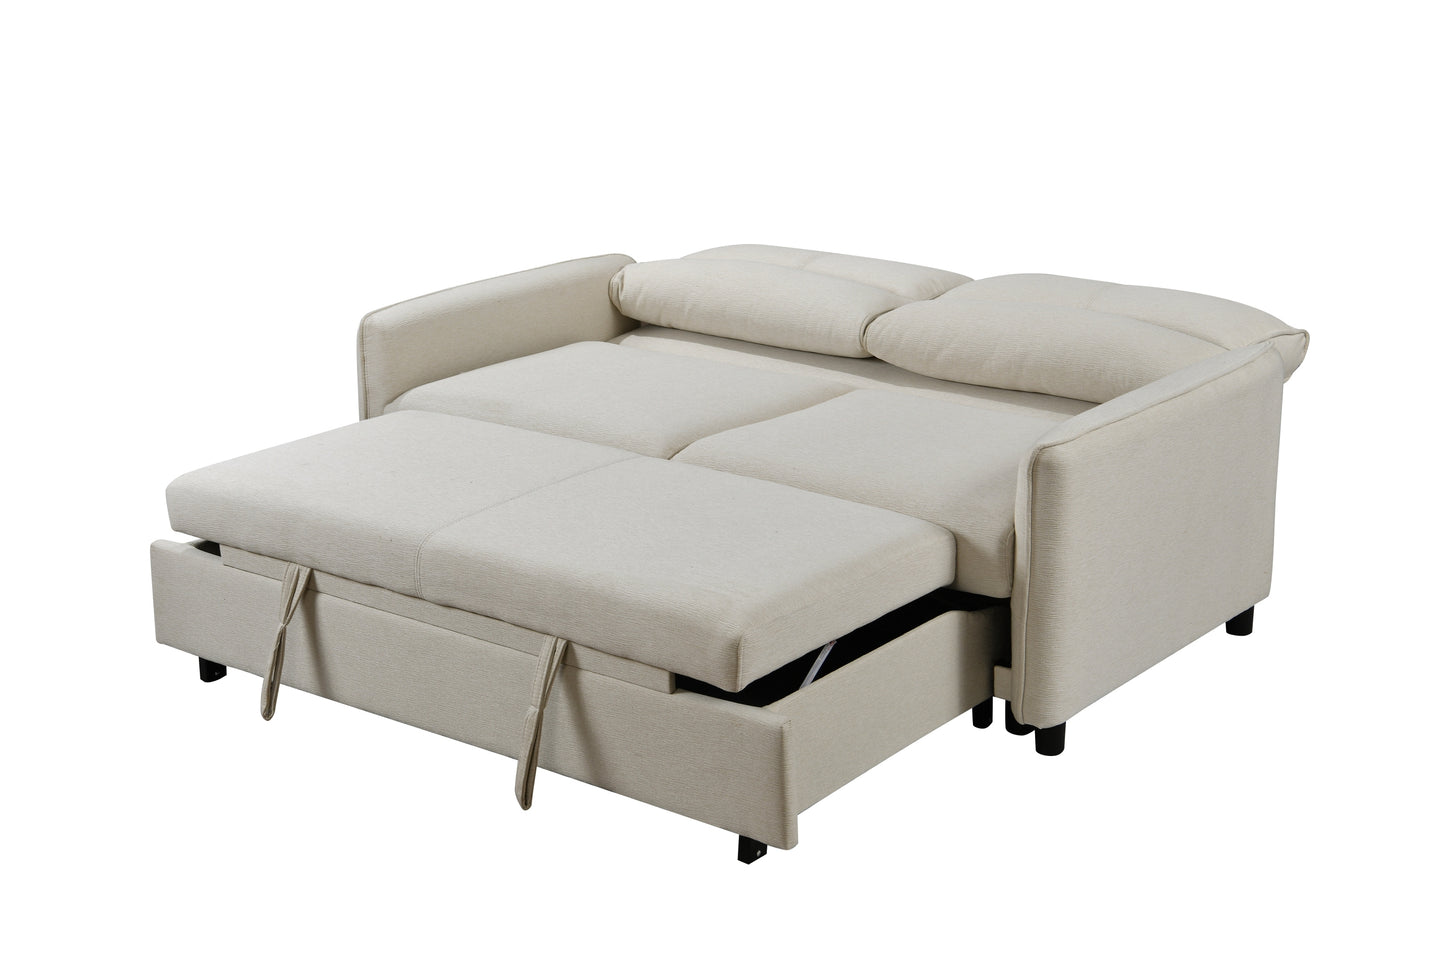 Beige Loveseat Futon: 3-in-1 Sofa Bed, Reclining Backrest